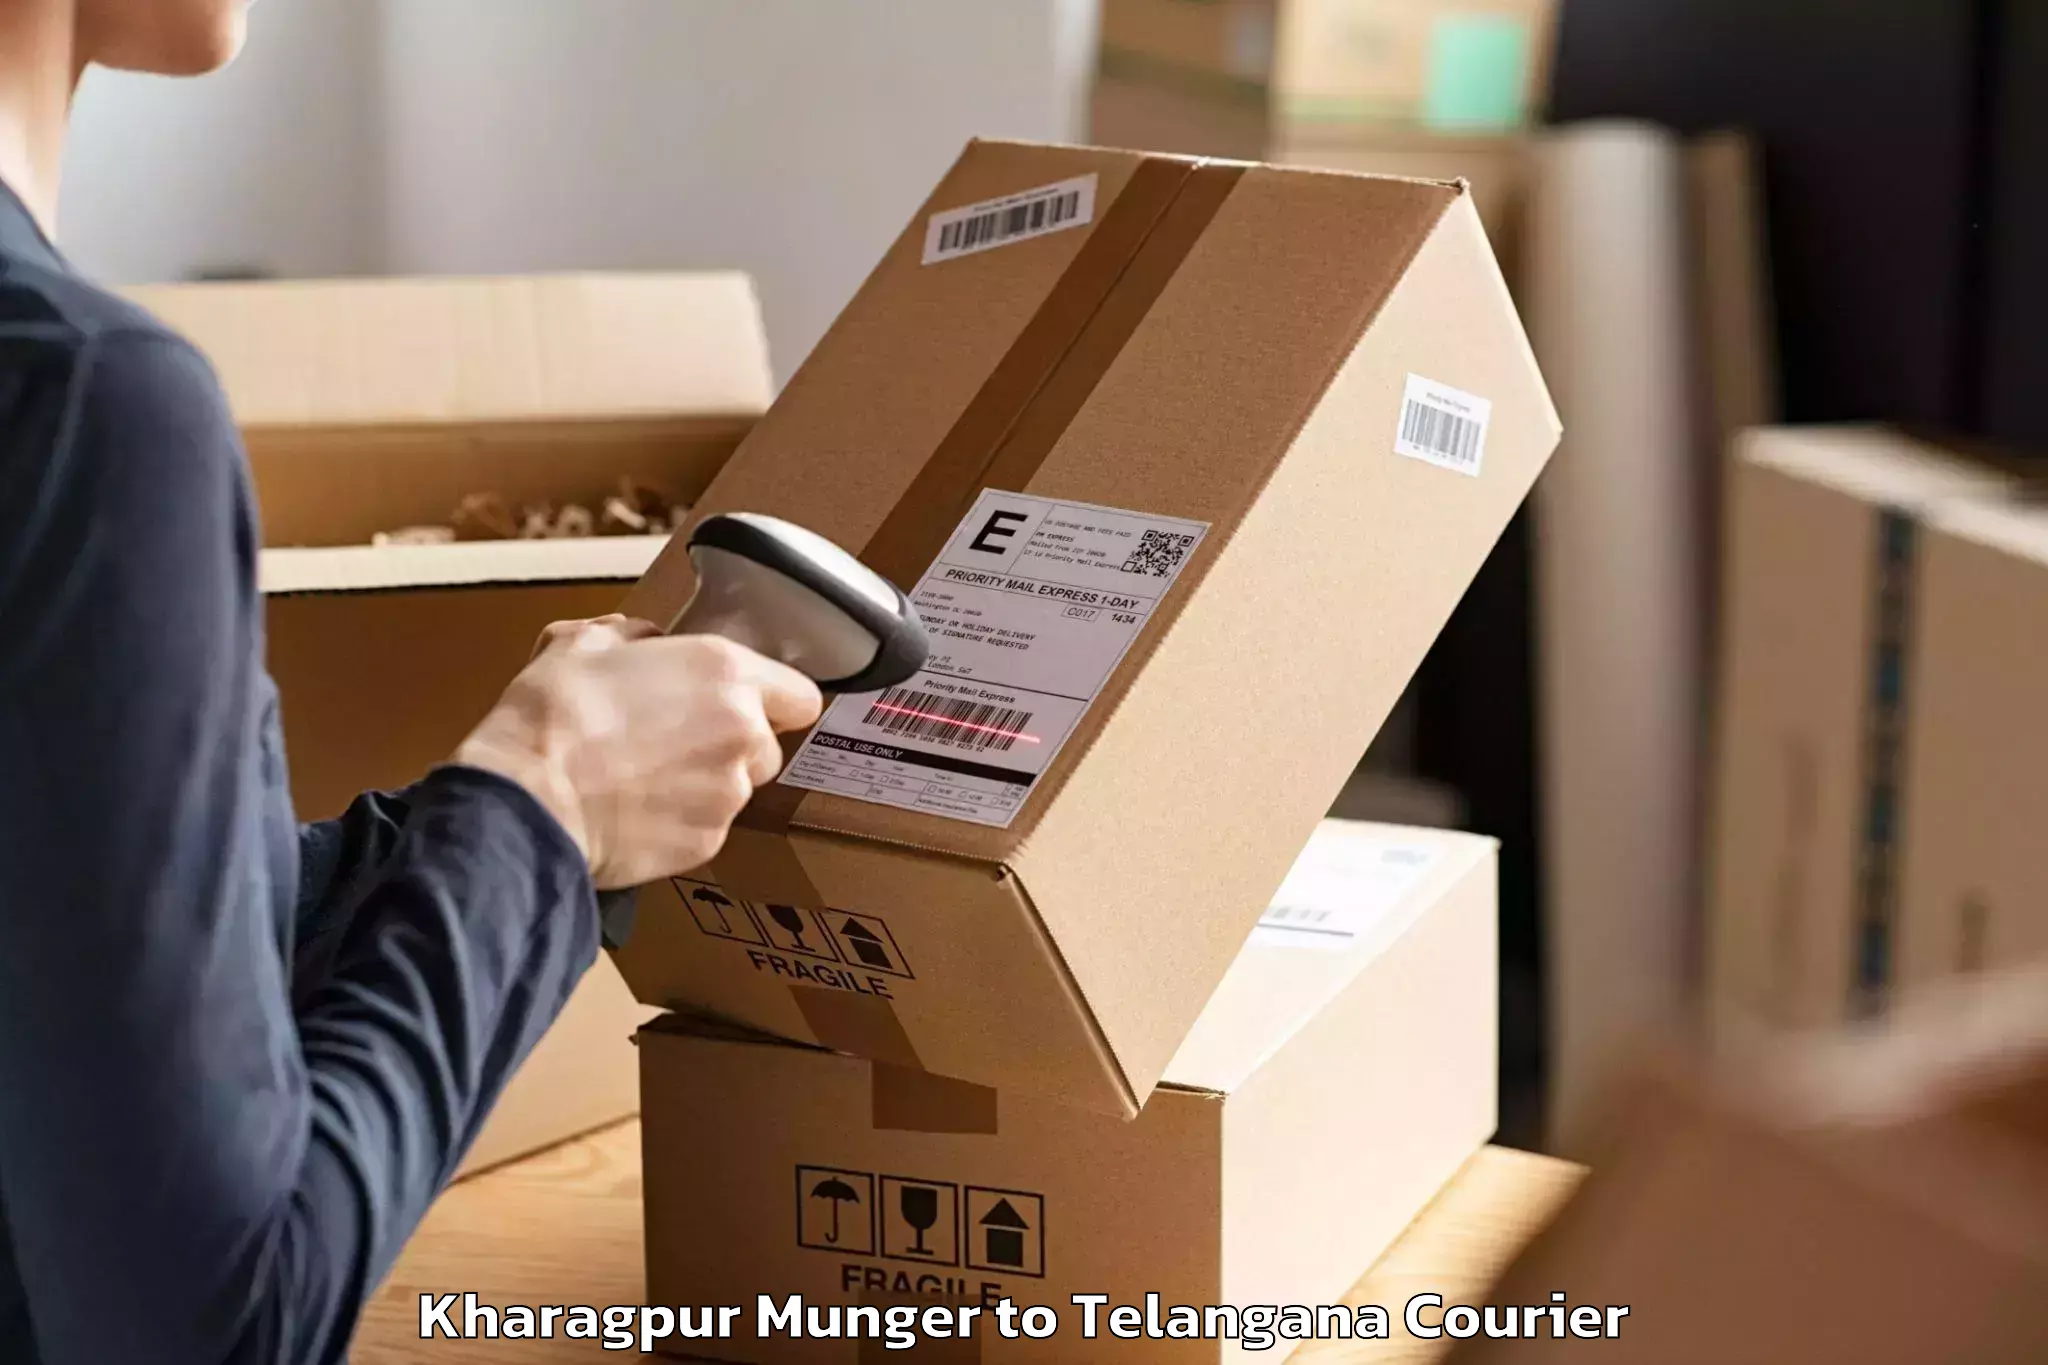 Furniture moving experts Kharagpur Munger to Babasagar